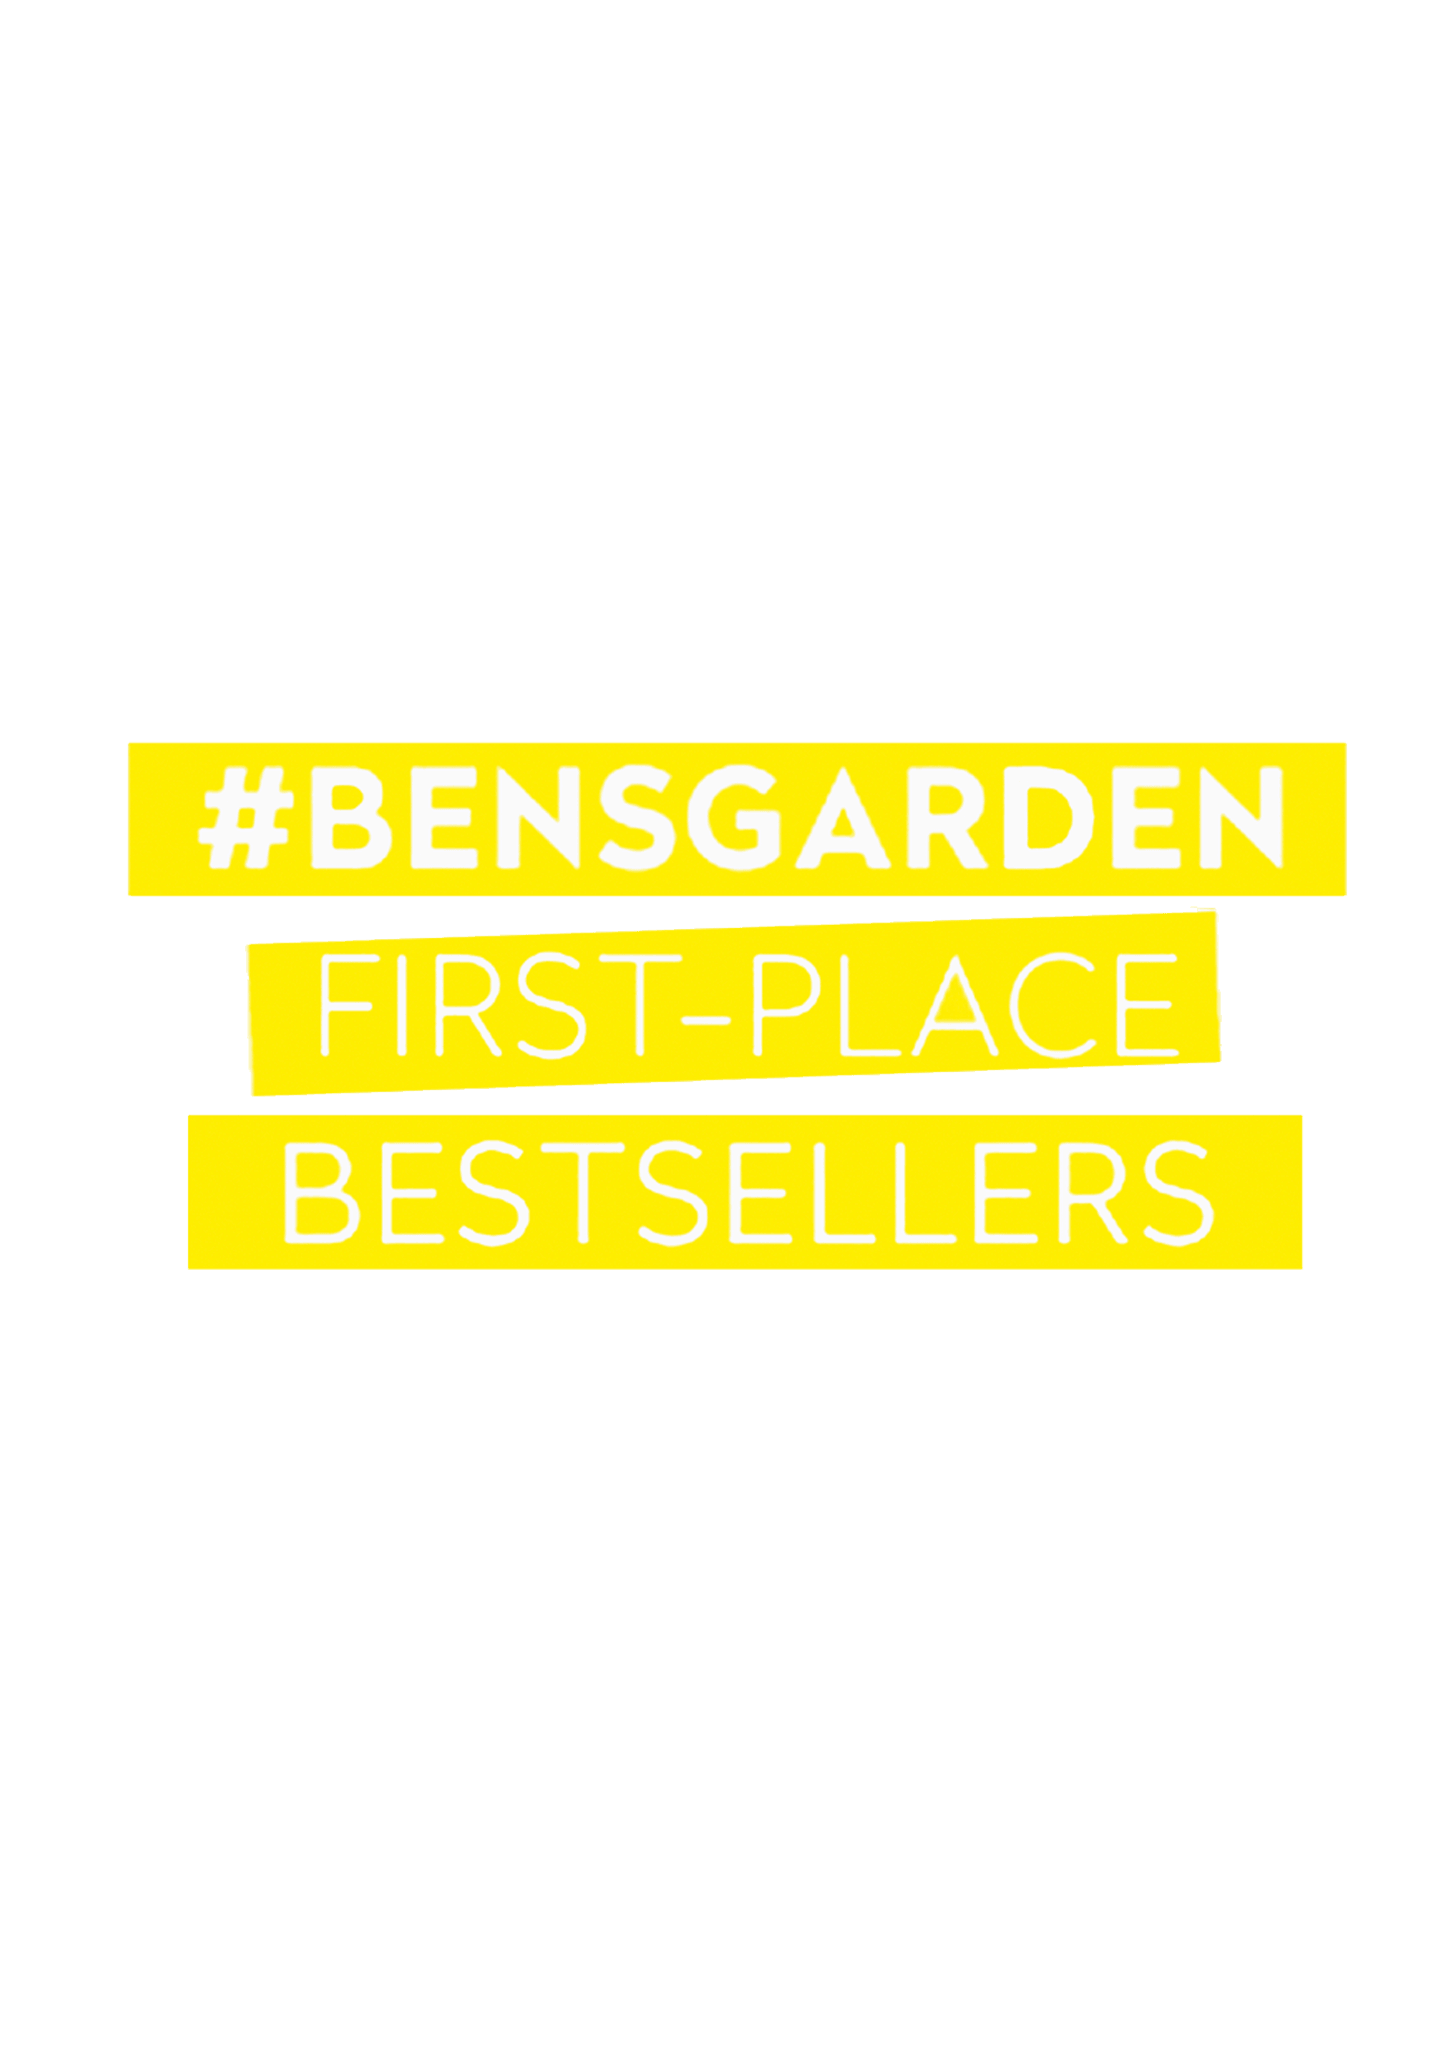 Ben's Bestsellers > - Bensgarden.com